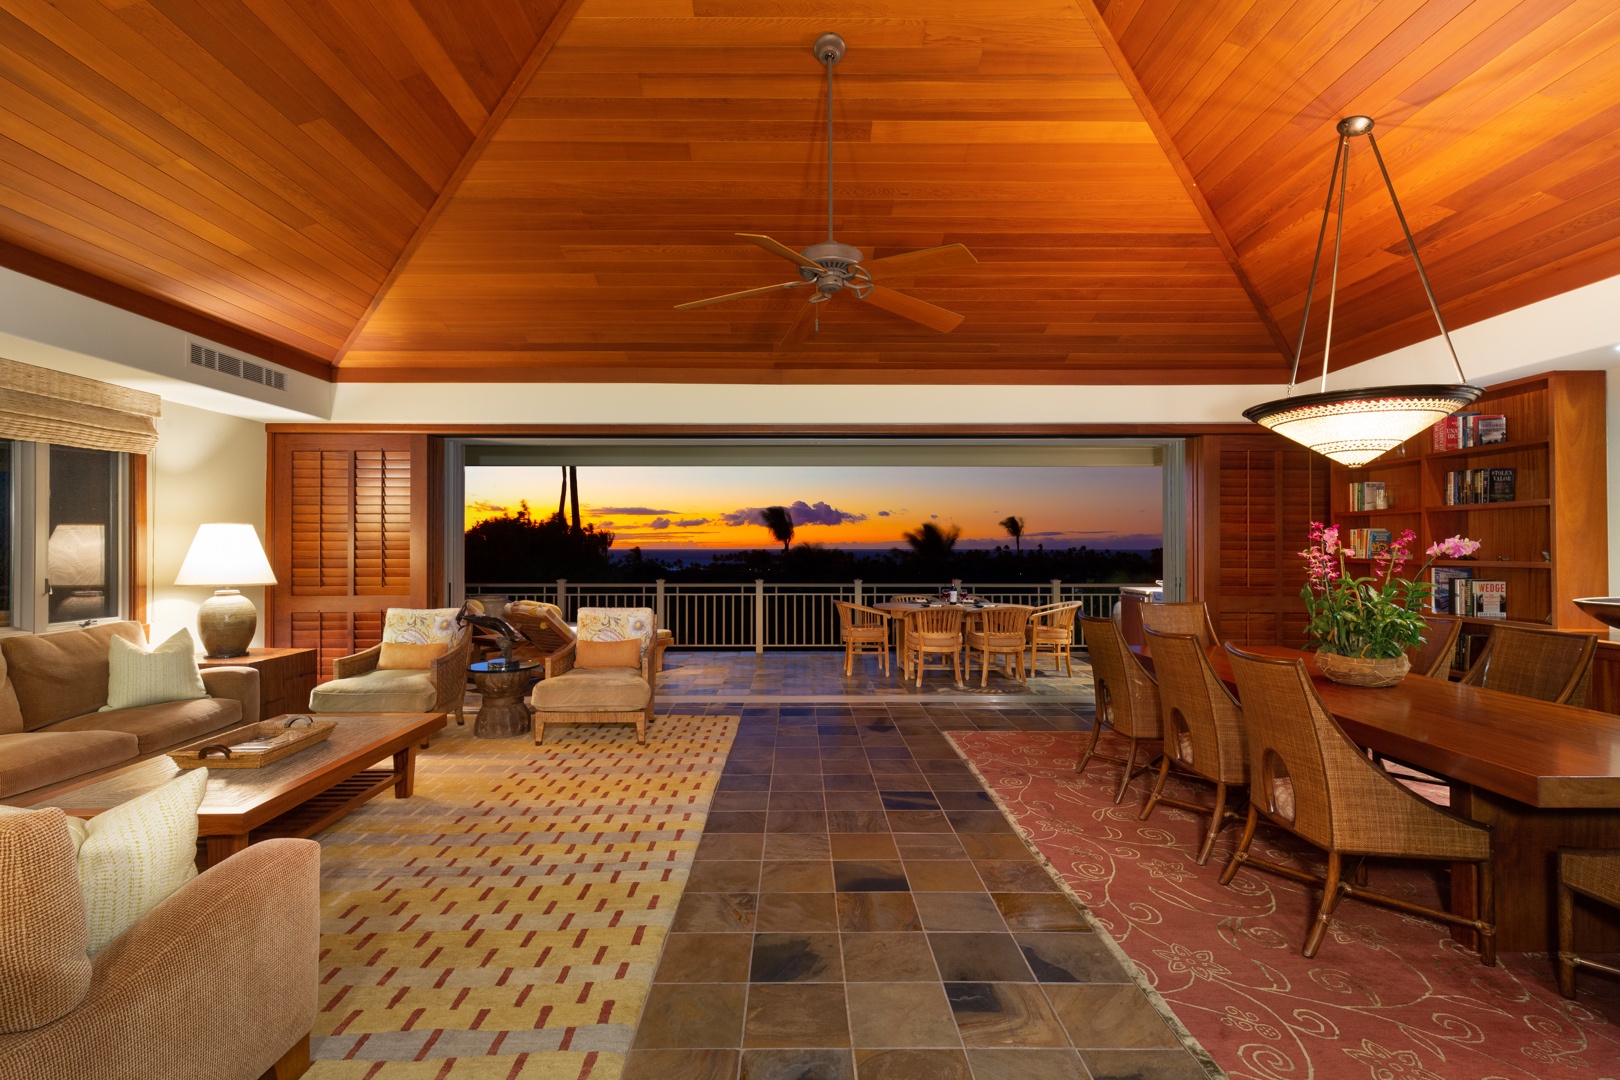 Kailua Kona Vacation Rentals, 3BD Ke Alaula Villa (210A) at Four Seasons Resort at Hualalai - View from upper landing entry across great room to lanai and sunset beyond.